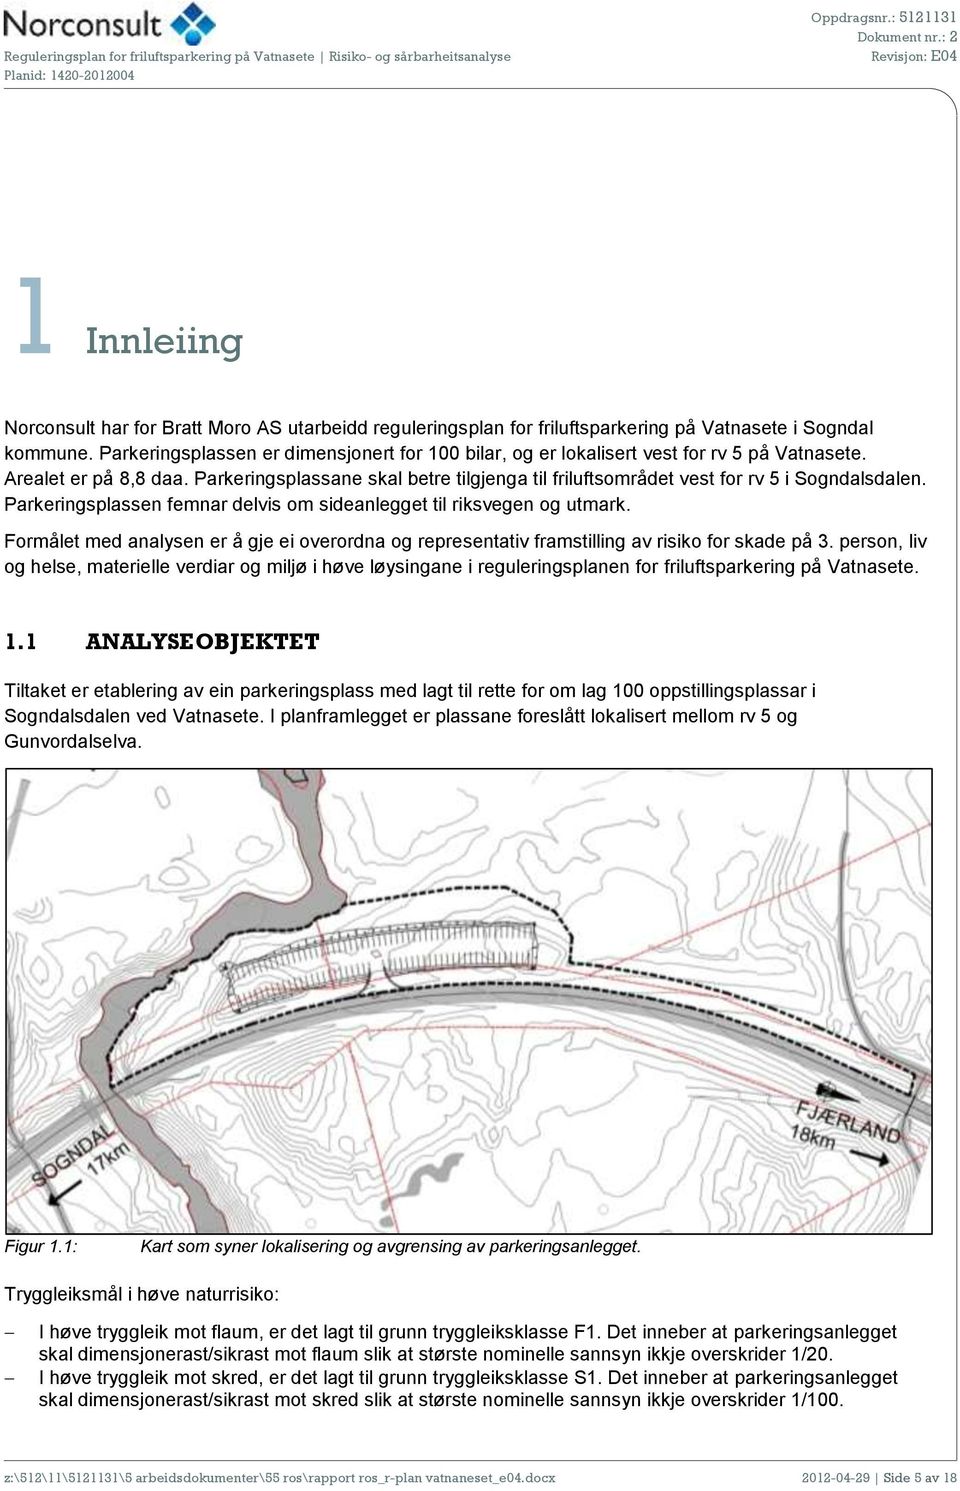 Parkeringsplassane skal betre tilgjenga til friluftsområdet vest for rv 5 i Sogndalsdalen. Parkeringsplassen femnar delvis om sideanlegget til riksvegen og utmark.